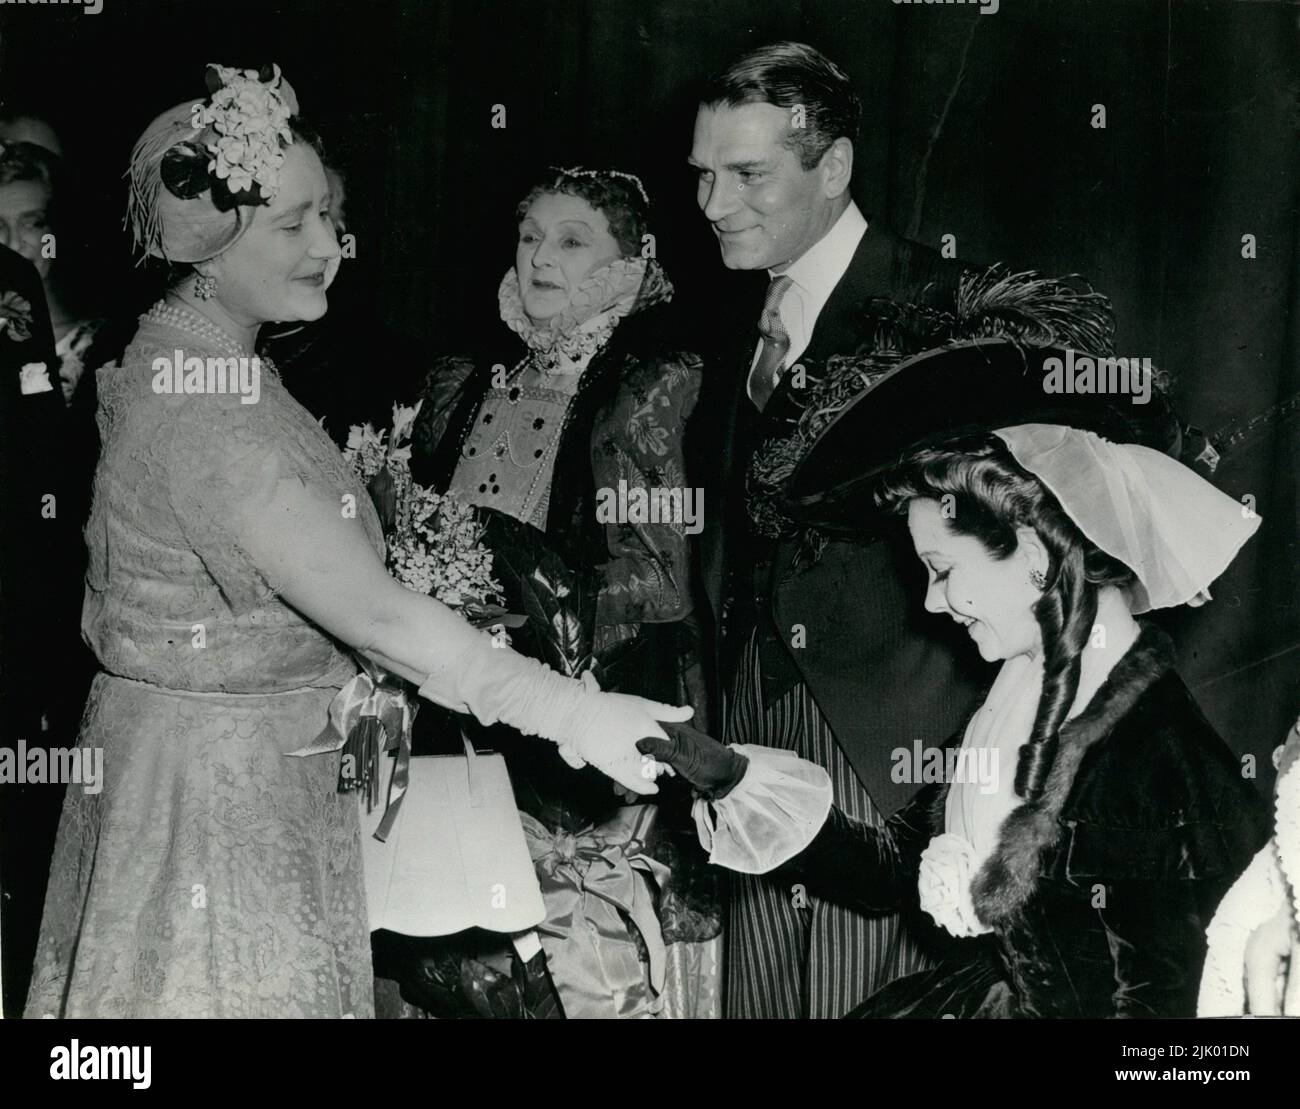 06 juin 1954 - Londres, Angleterre, Royaume-Uni - toujours en costume, l'actrice VIVIEN LEIGH Curtsy à la REINE MÈRE, au All-Star Matinee du Variety Club au théâtre de sa Majesté, Londres, hier. À côté de Leigh se trouve son mari, Sir LAURENCE OLIVIER, et DAME SYBIL THORNDIKE. Le matinée a commémoré trois anniversaires - le cinquantième anniversaire depuis la fondation de l'Académie royale d'art dramatique; le jubilé d'or de Dame Sybil sur la scène; et le centenaire de la naissance de Sir Herbert Beerbohm Tree, fondateur de la RADA. (Image de crédit : © Keystone Press Agency/ZUMA Wire) Banque D'Images